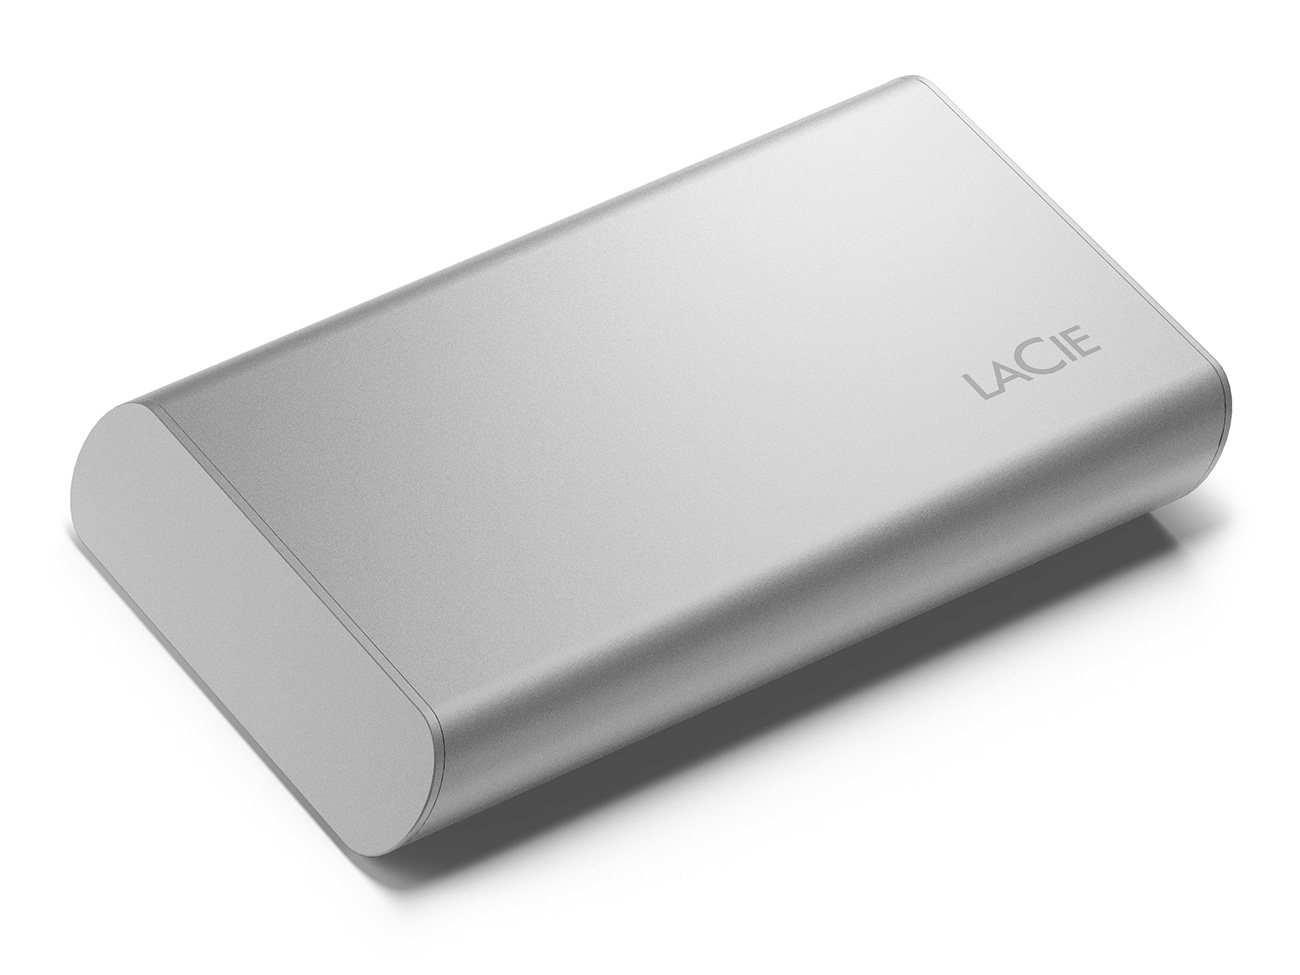 Представлены портативные SSD-накопители LaCie с емкостью до 2 ТБ